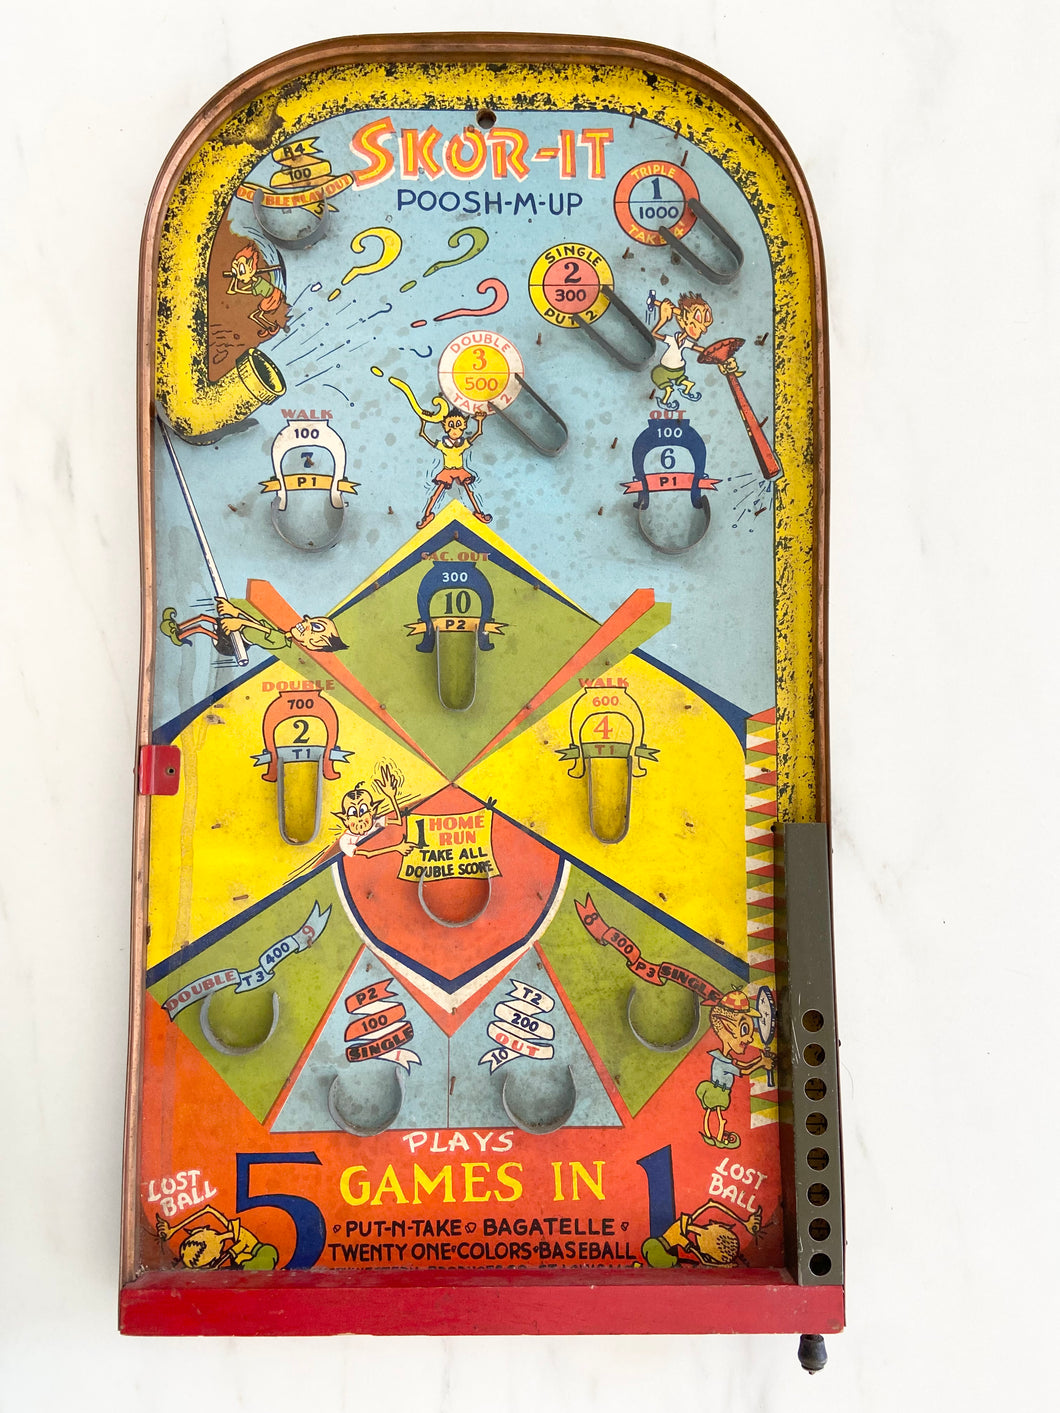 Vintage Poosh-M-Up Skor-it game board